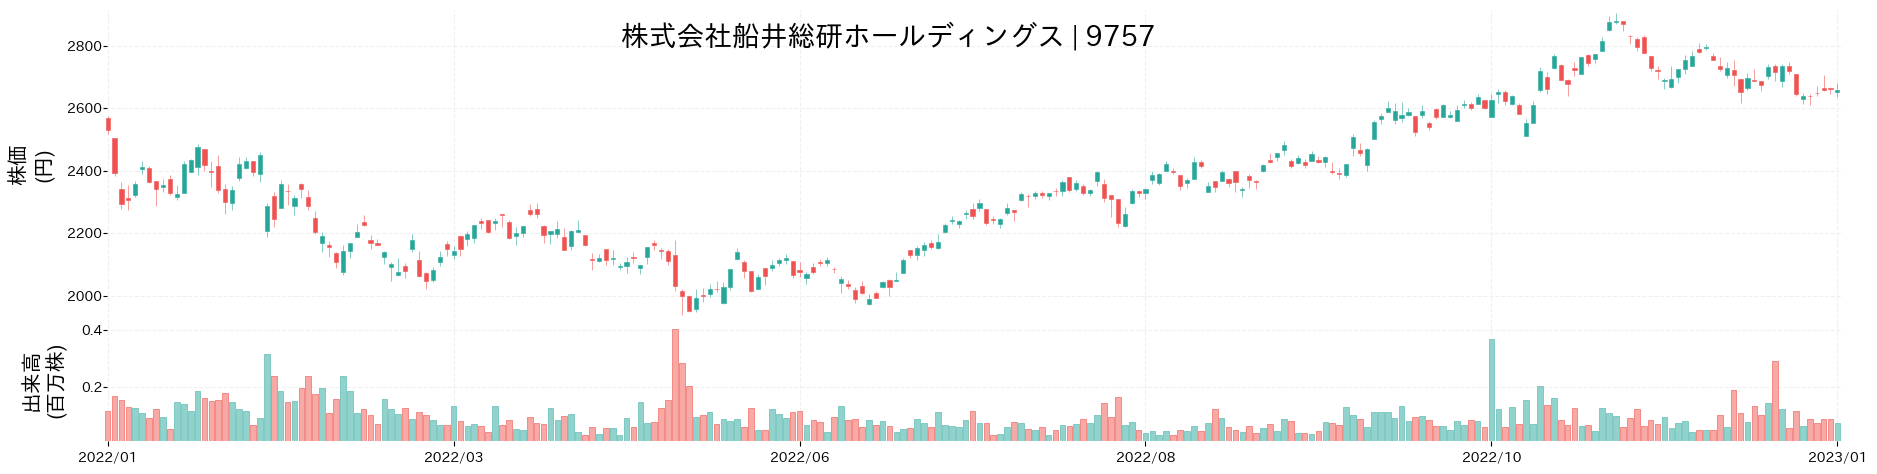 船井総研ホールディングスの株価推移(2022)